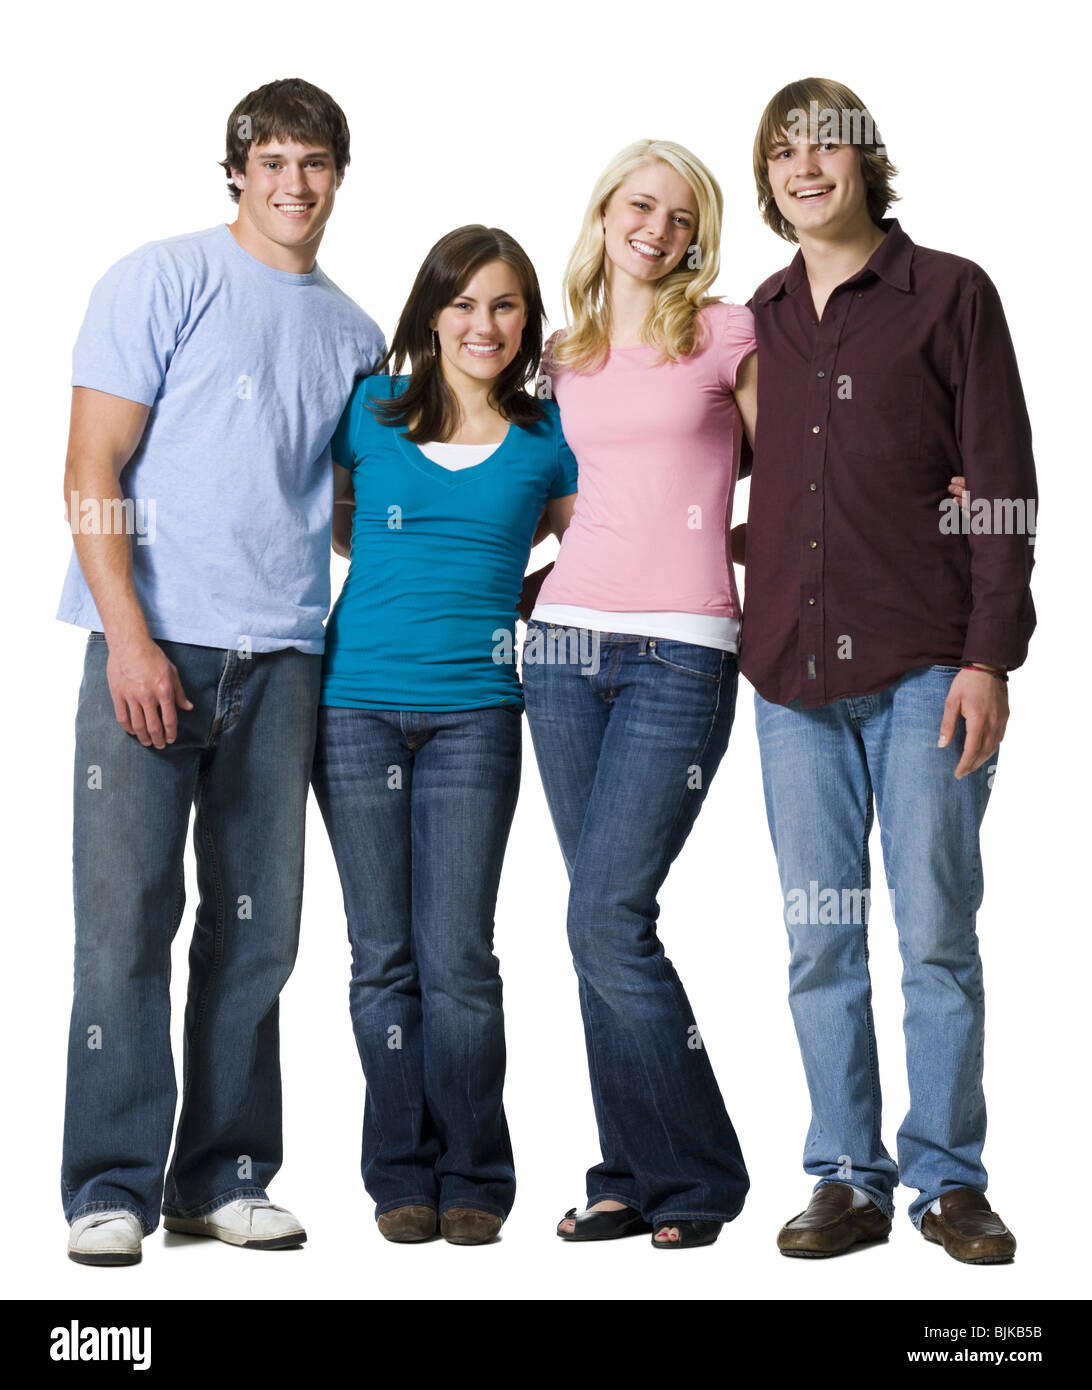 Quatre personnes smiling Banque D'Images